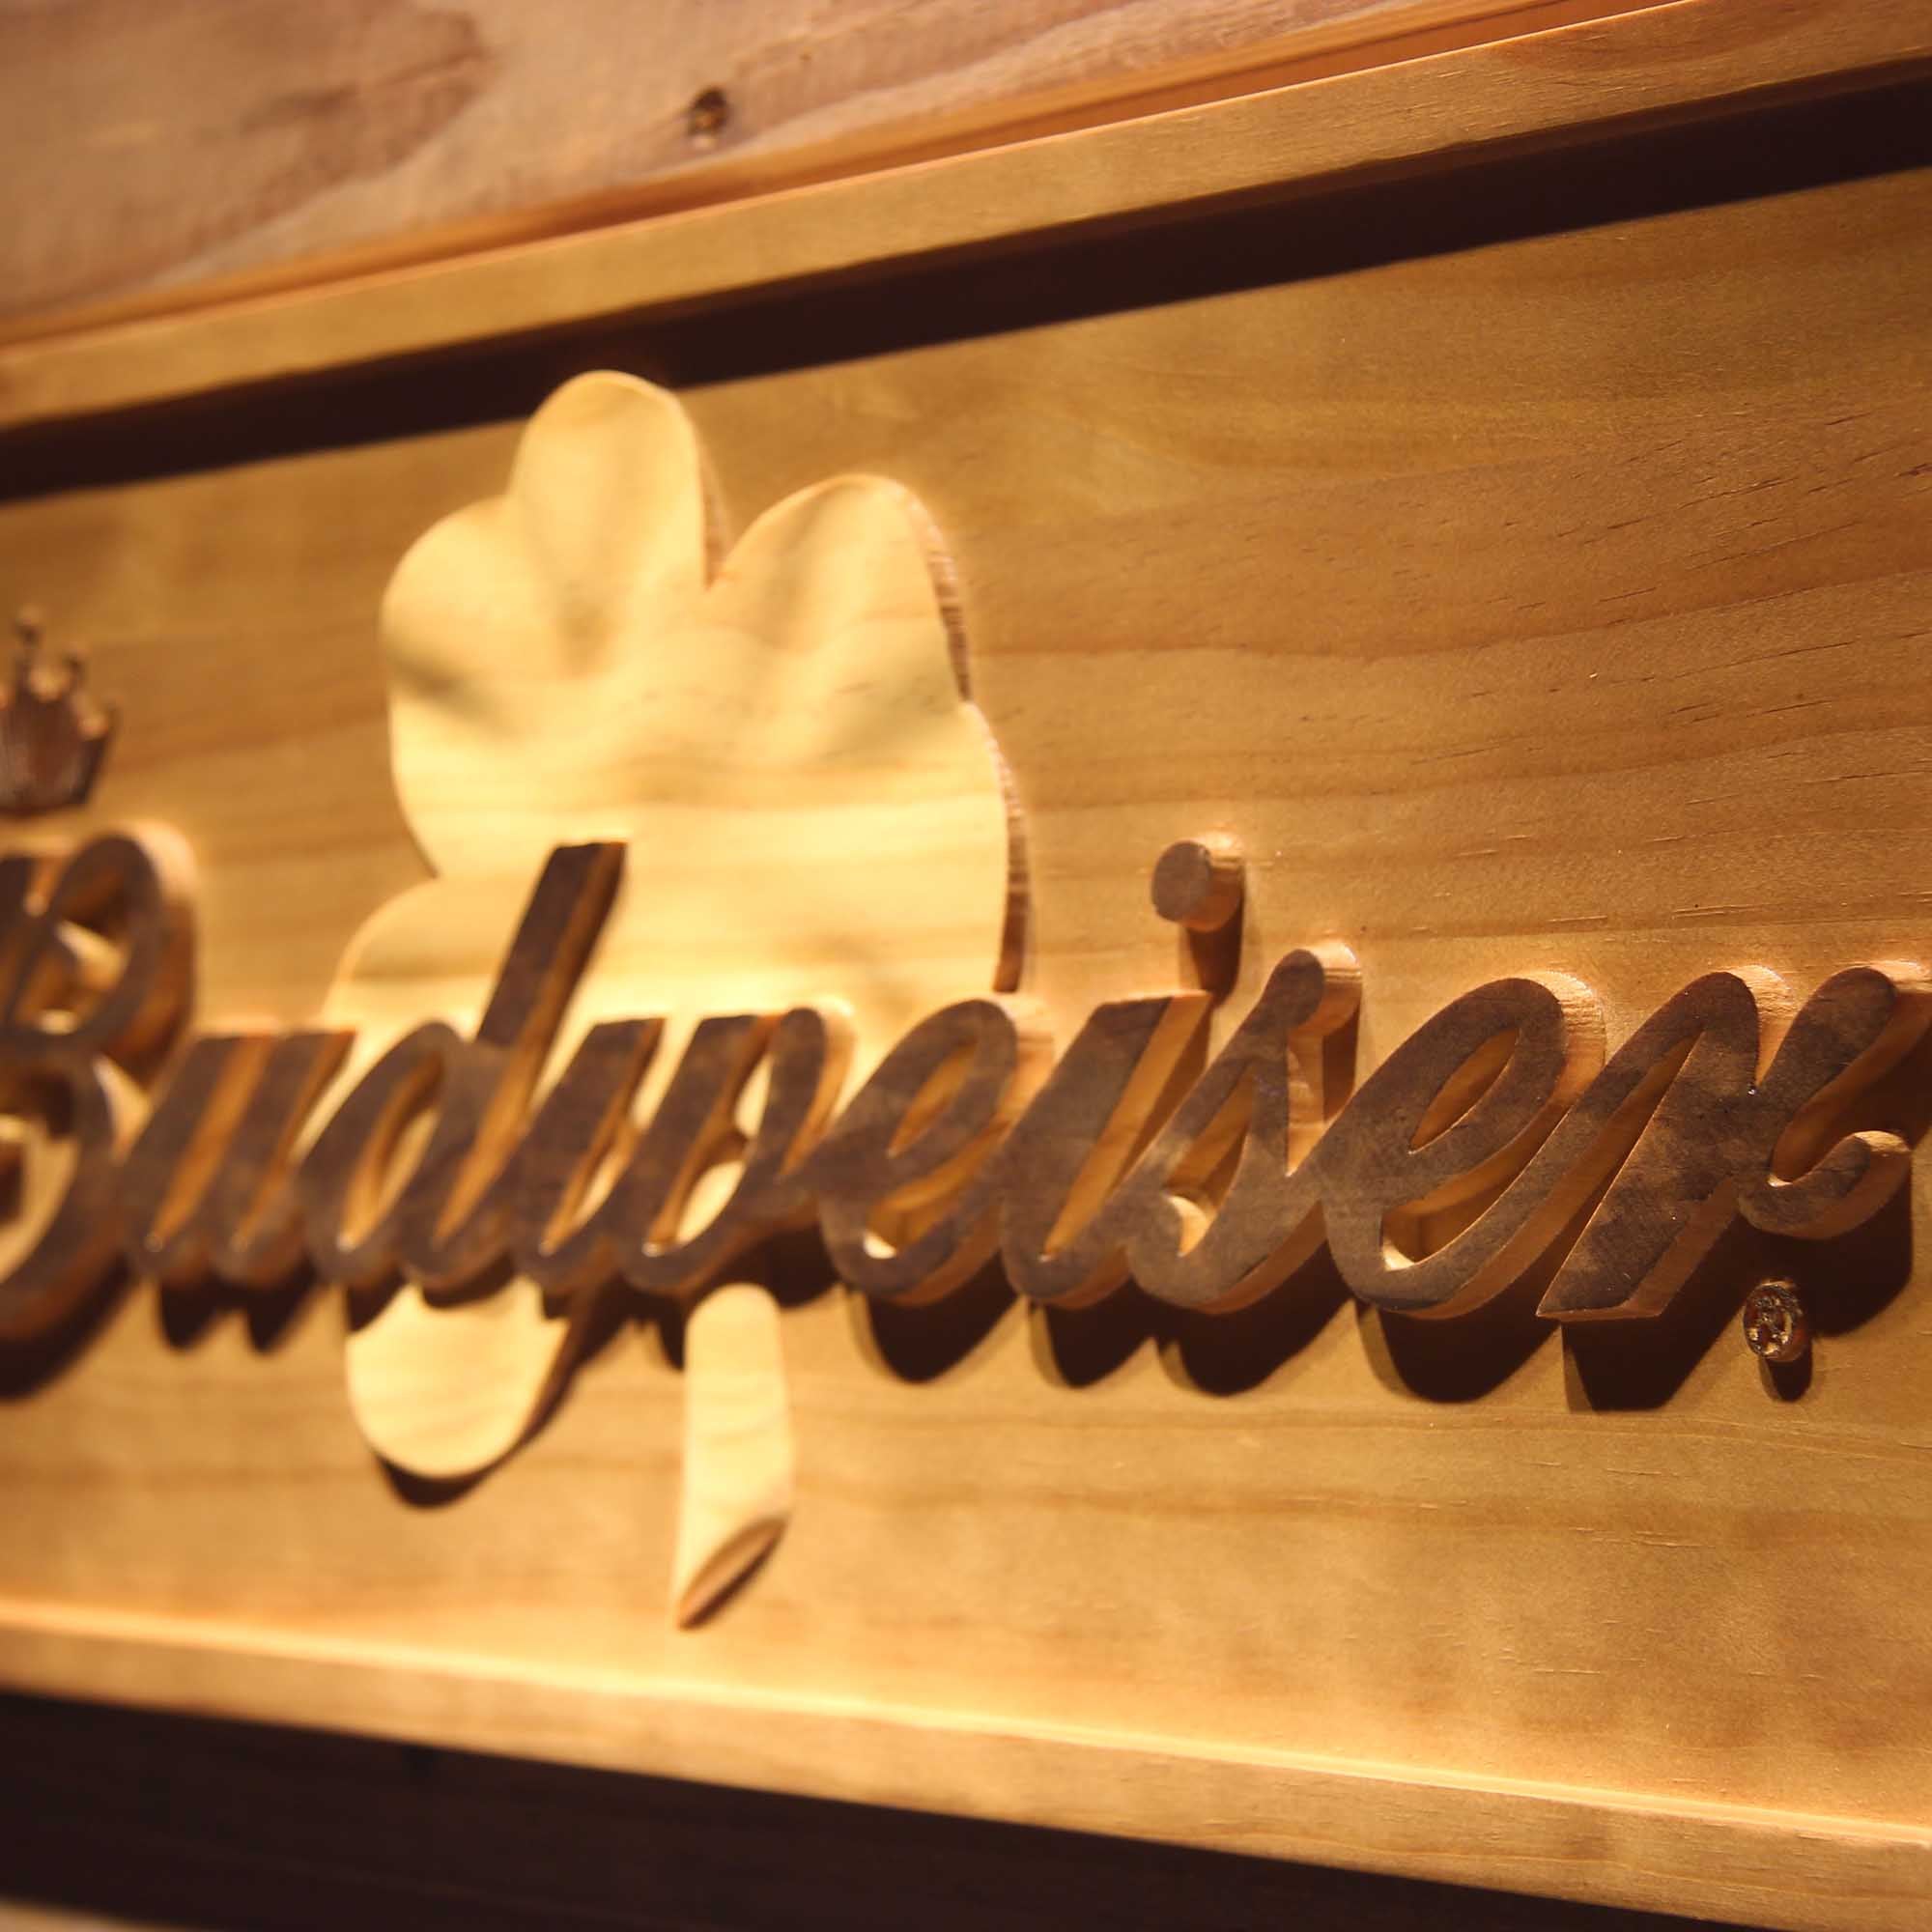 Budweiser Shamrock 3D Wooden Engrave Sign